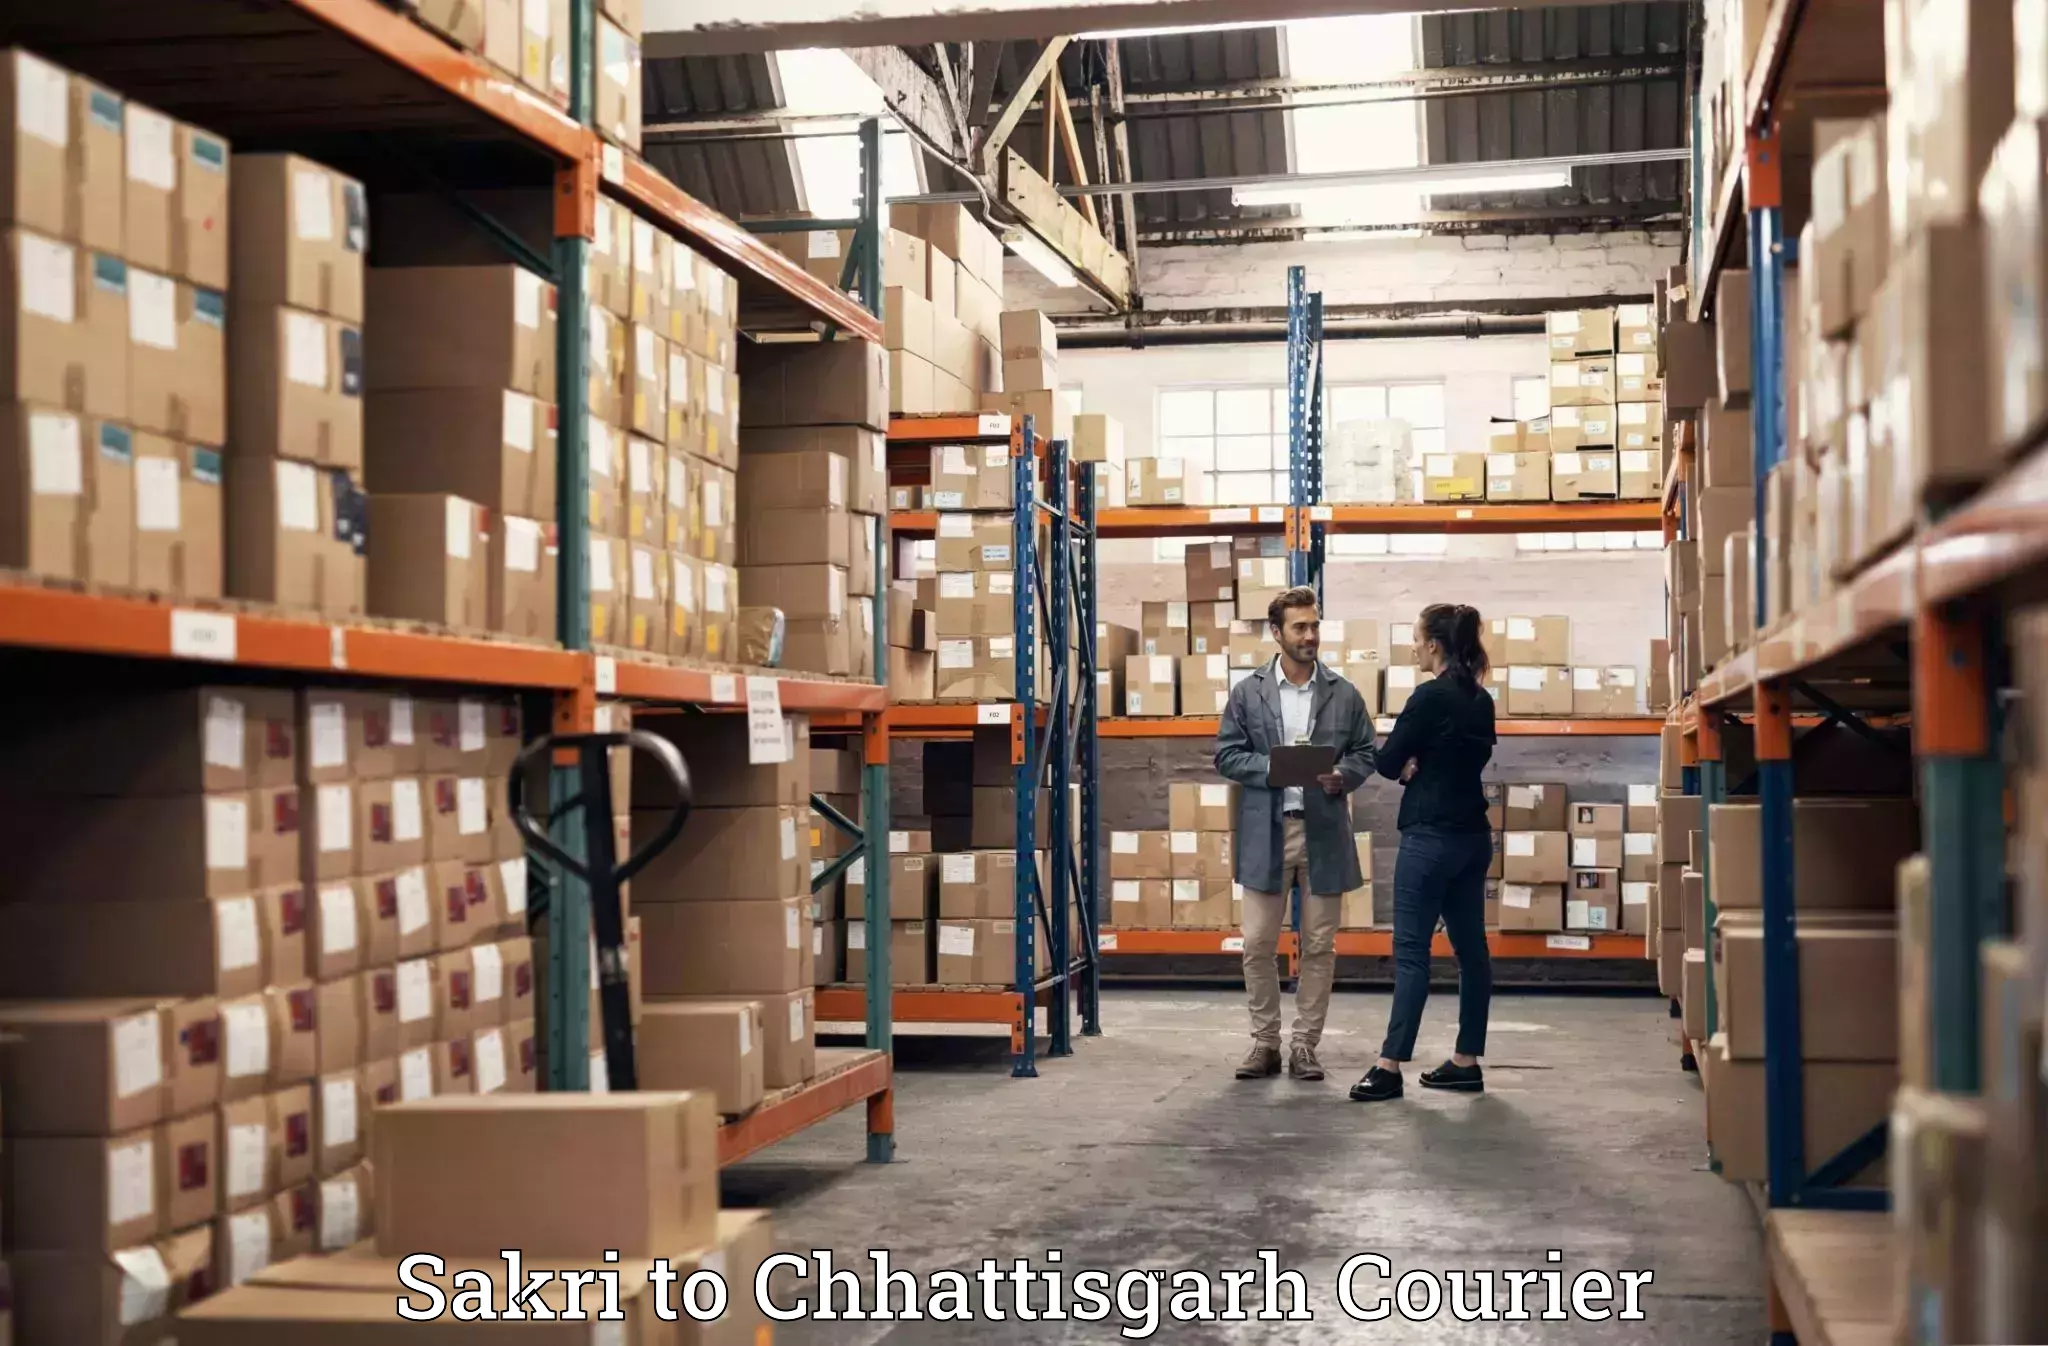 Luggage shipment specialists Sakri to Sakti